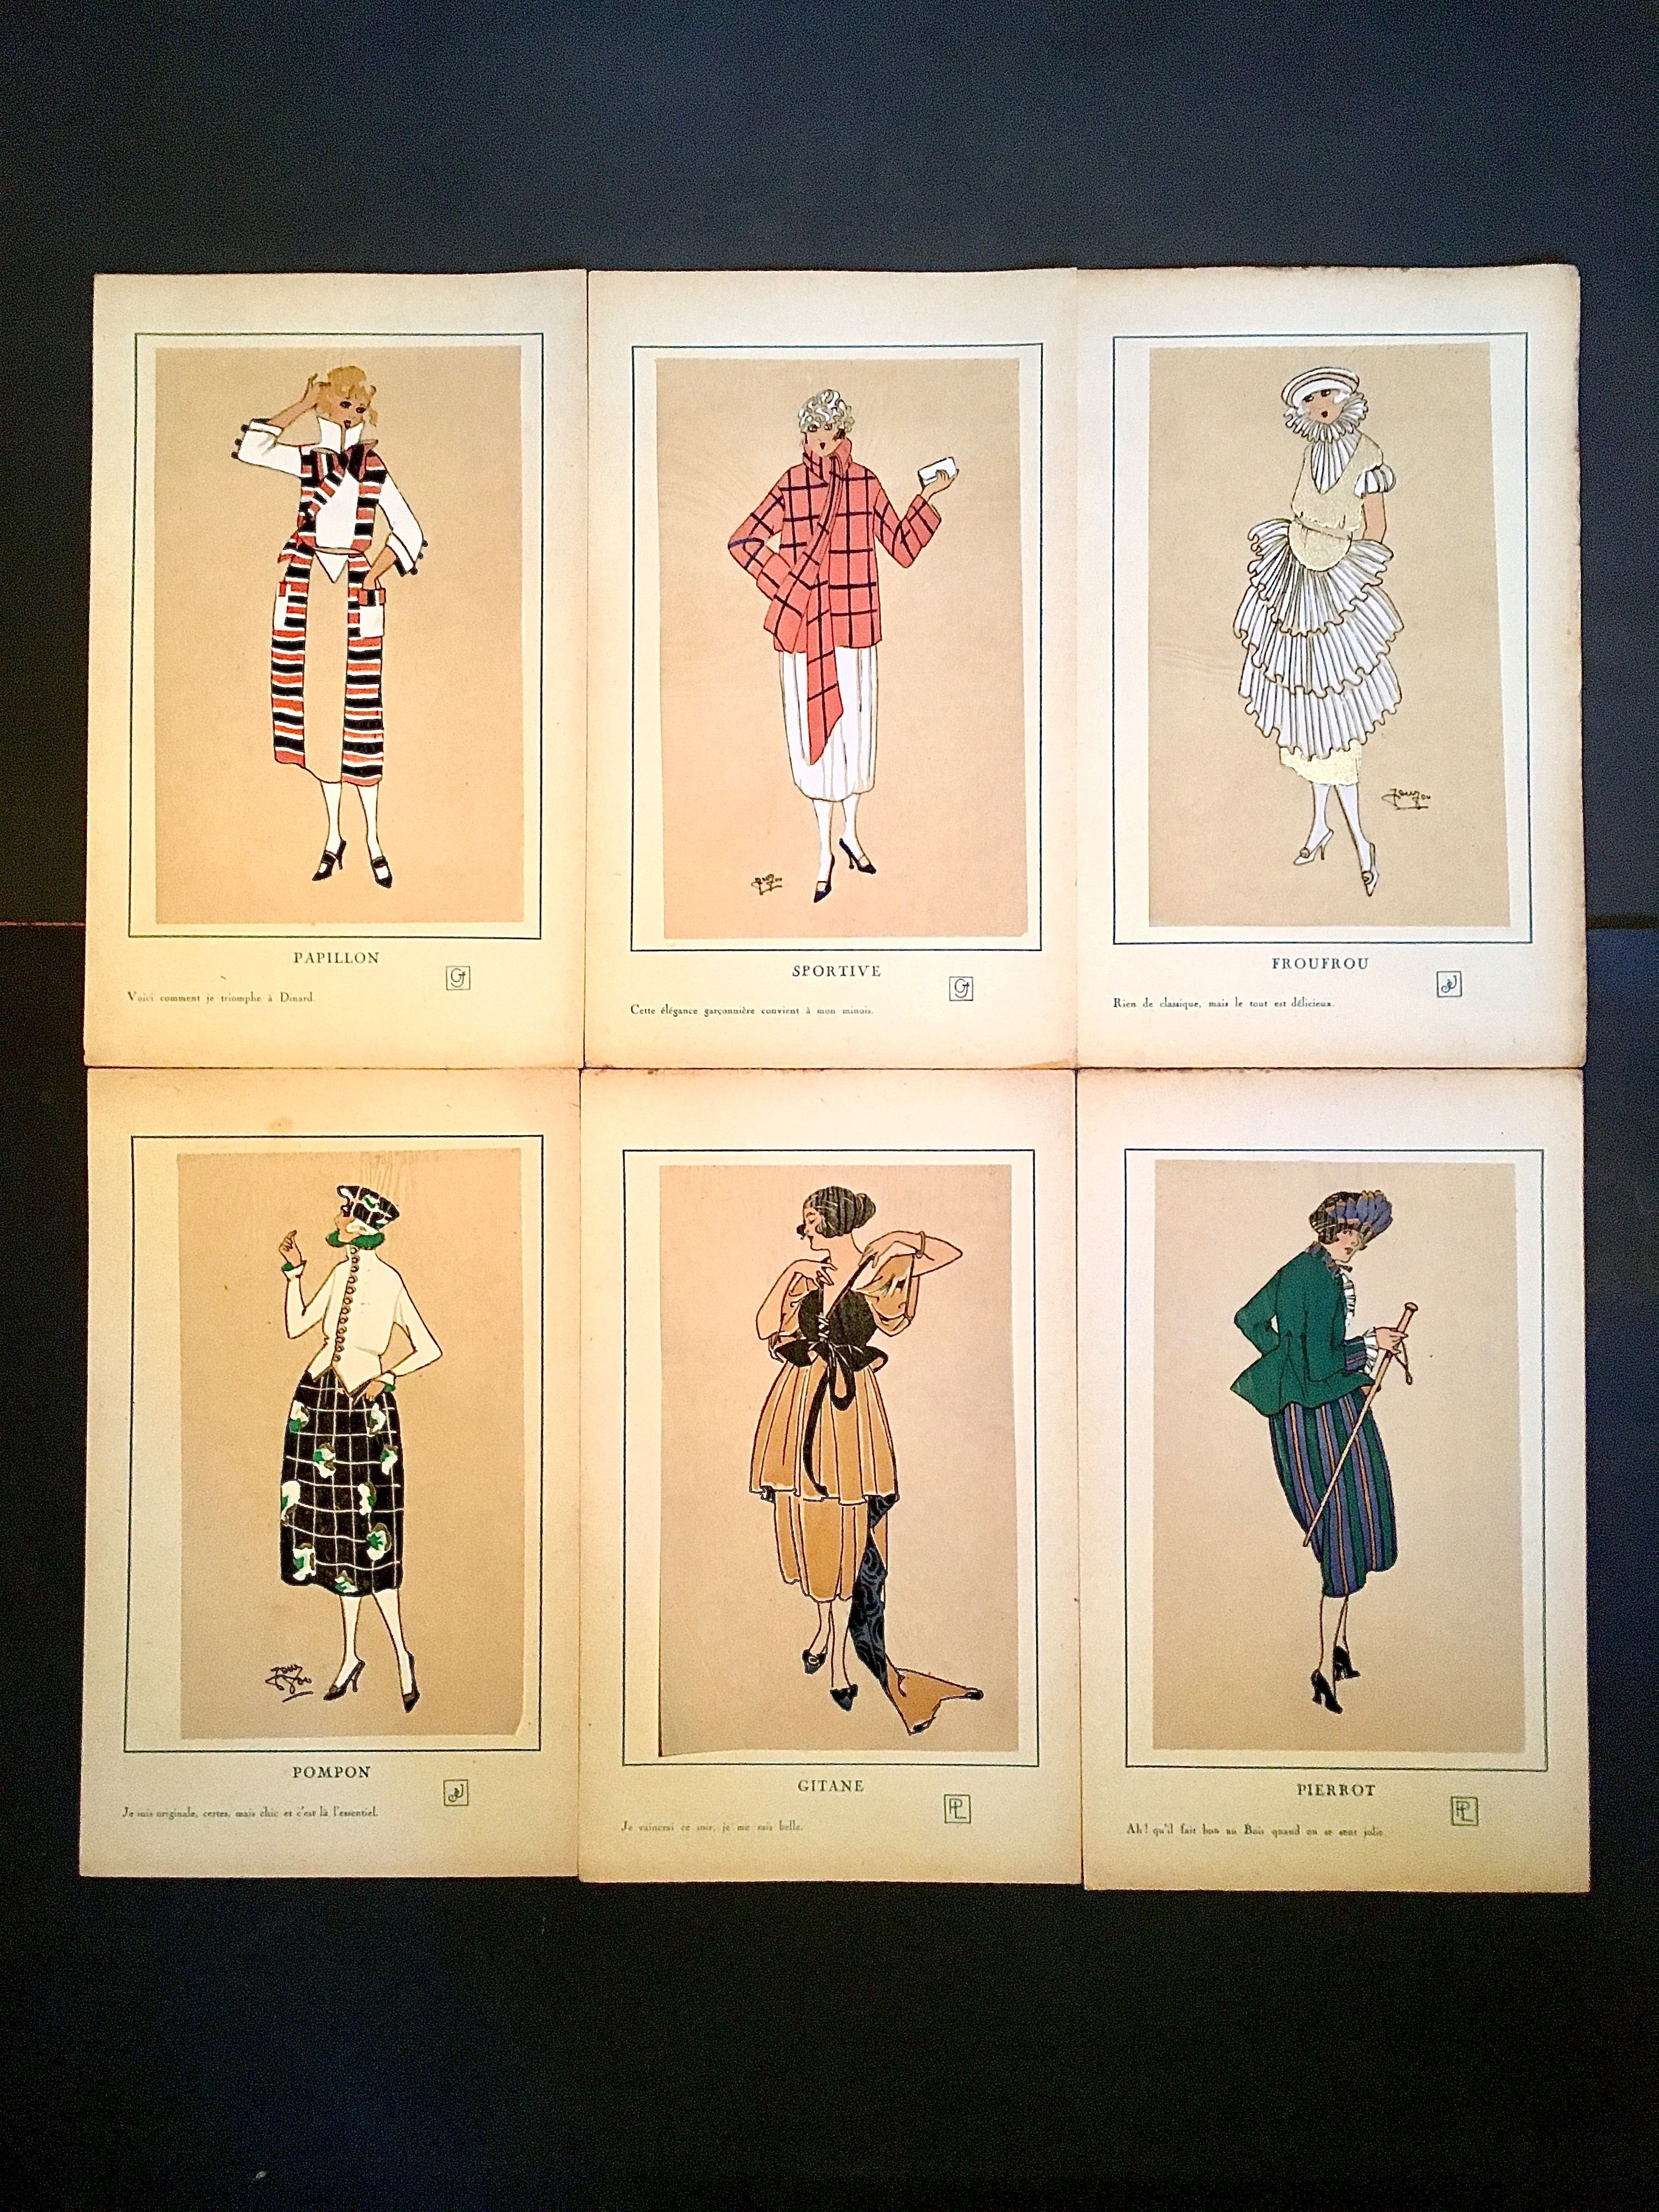 TRÉS PARRISIEN No 1 - 1920 - pintado à mão - catálogo de moda